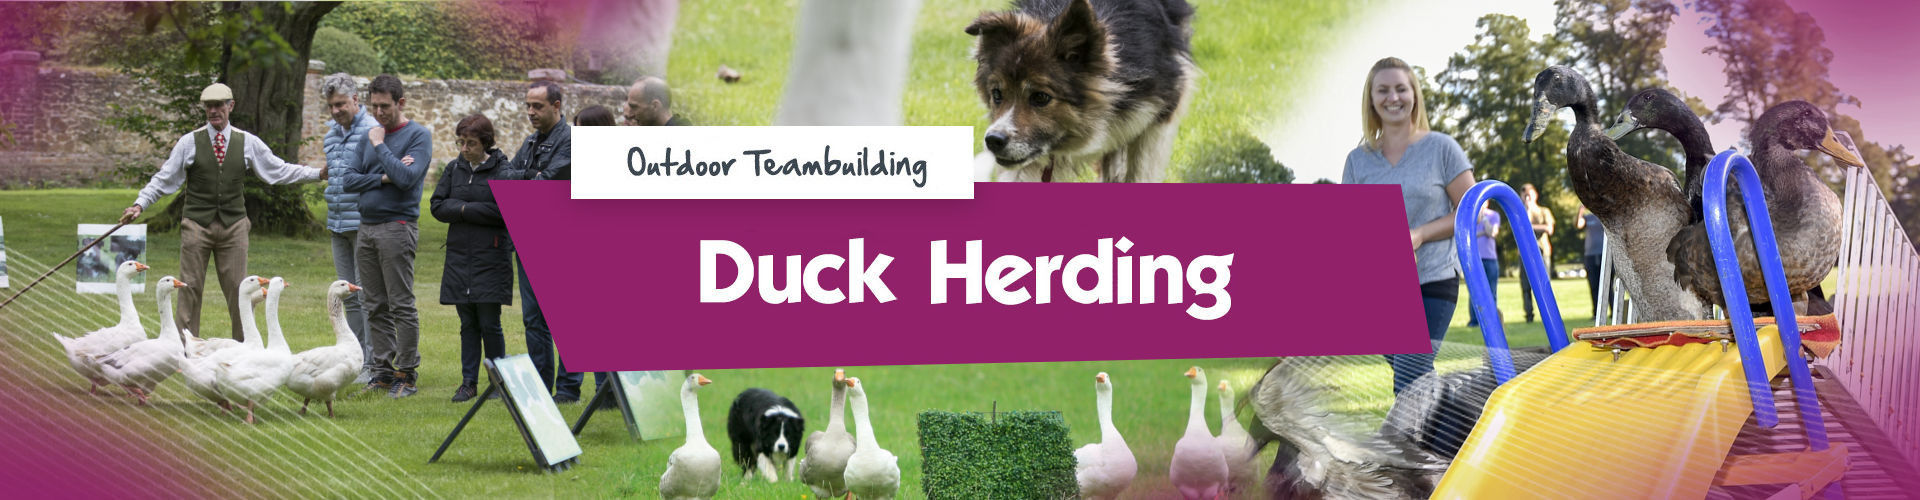 Duck Herding Banner